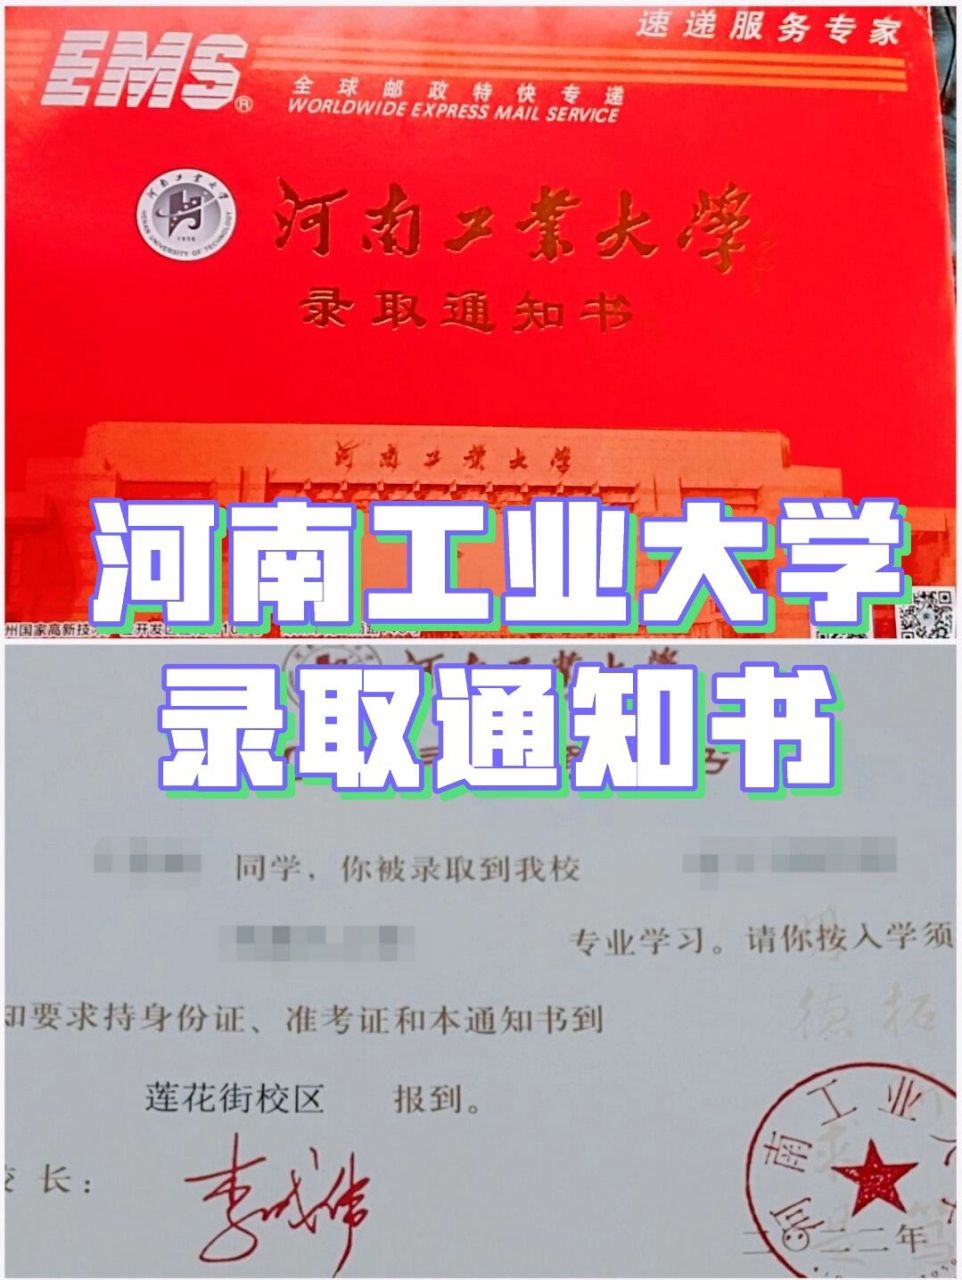 河南工业大学通知书图片